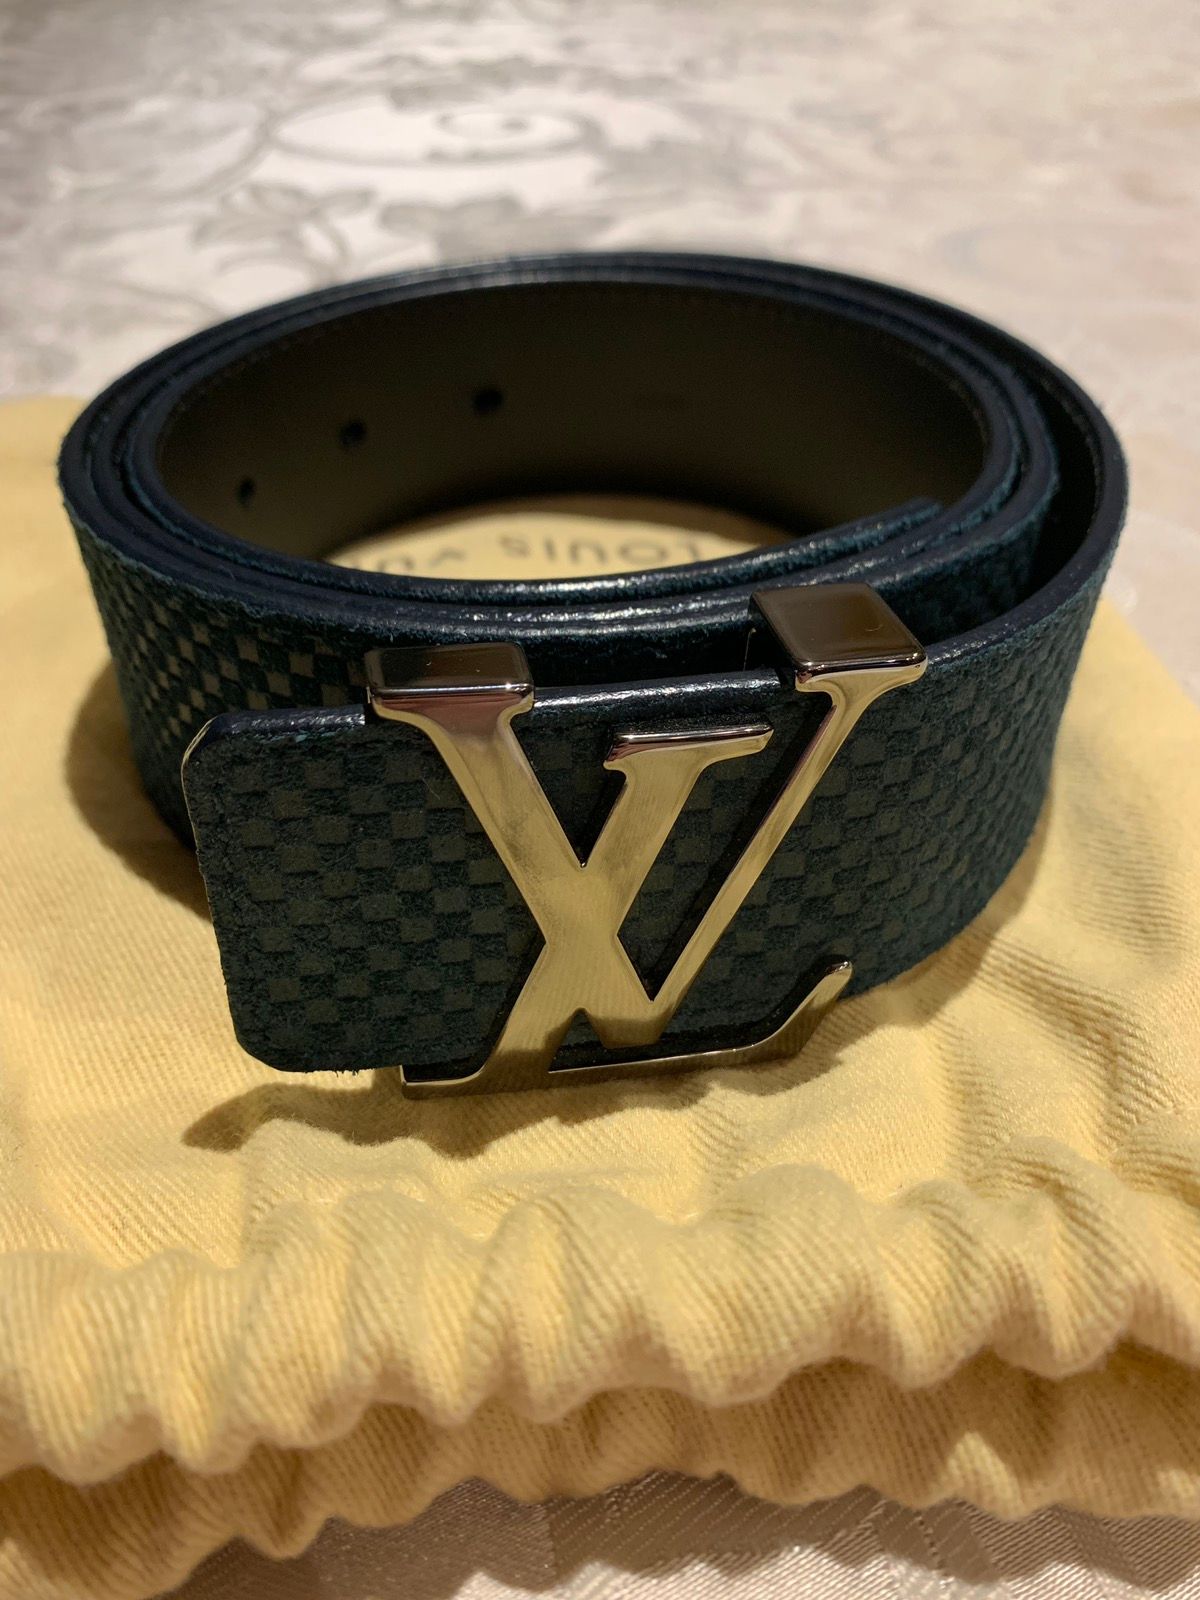 Louis Vuitton Navy blue louis vuitton belt